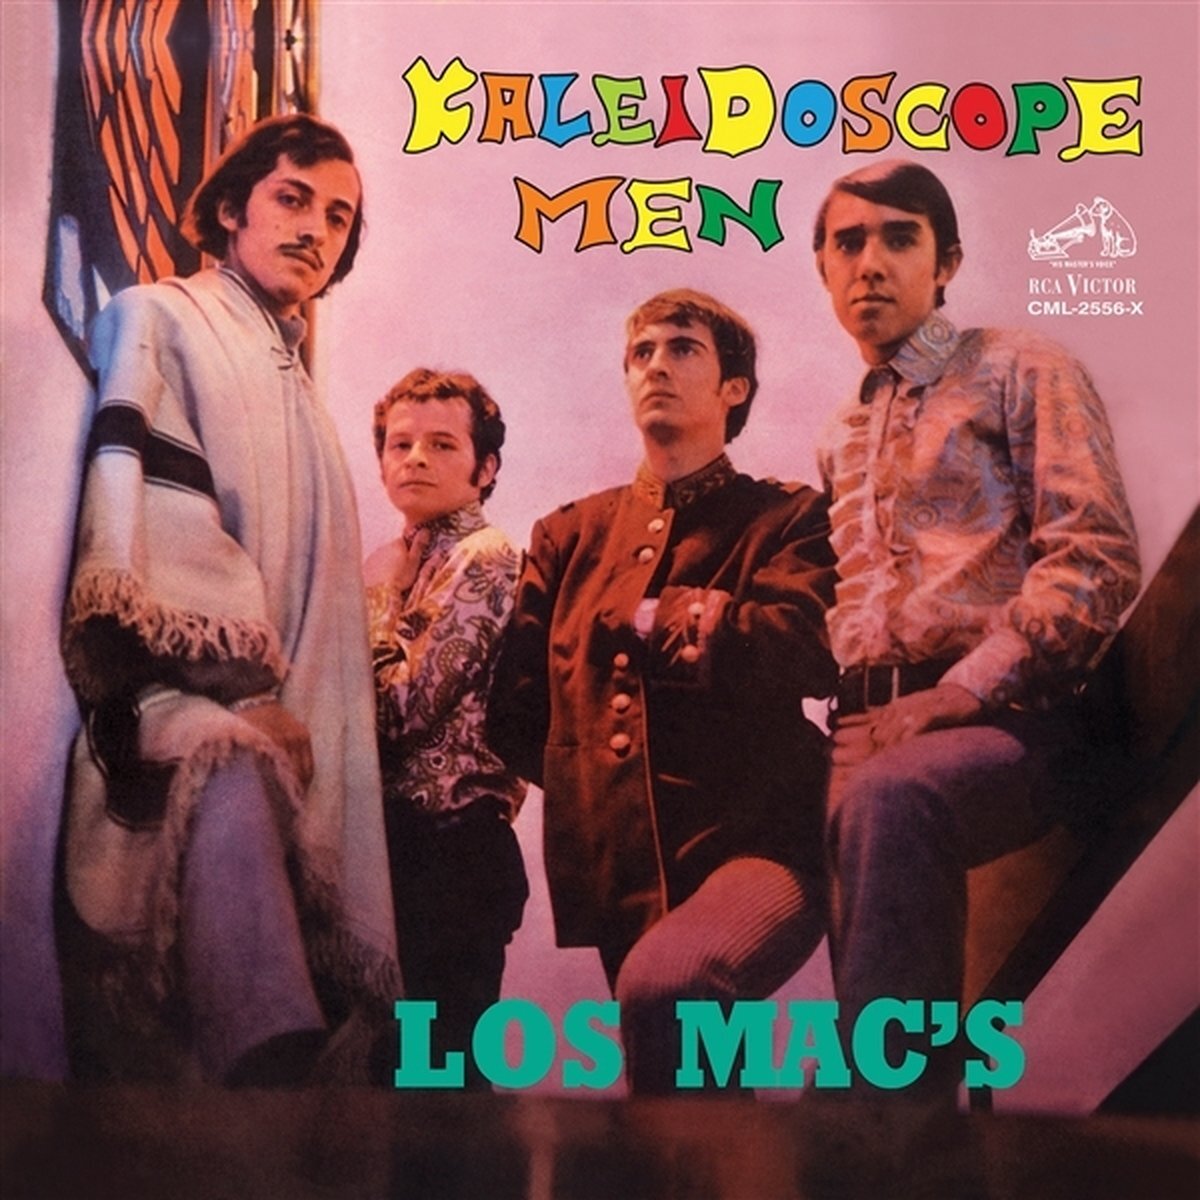 Sonic Rendezvous Los Mac's - Kaleidoscope Men (LP)